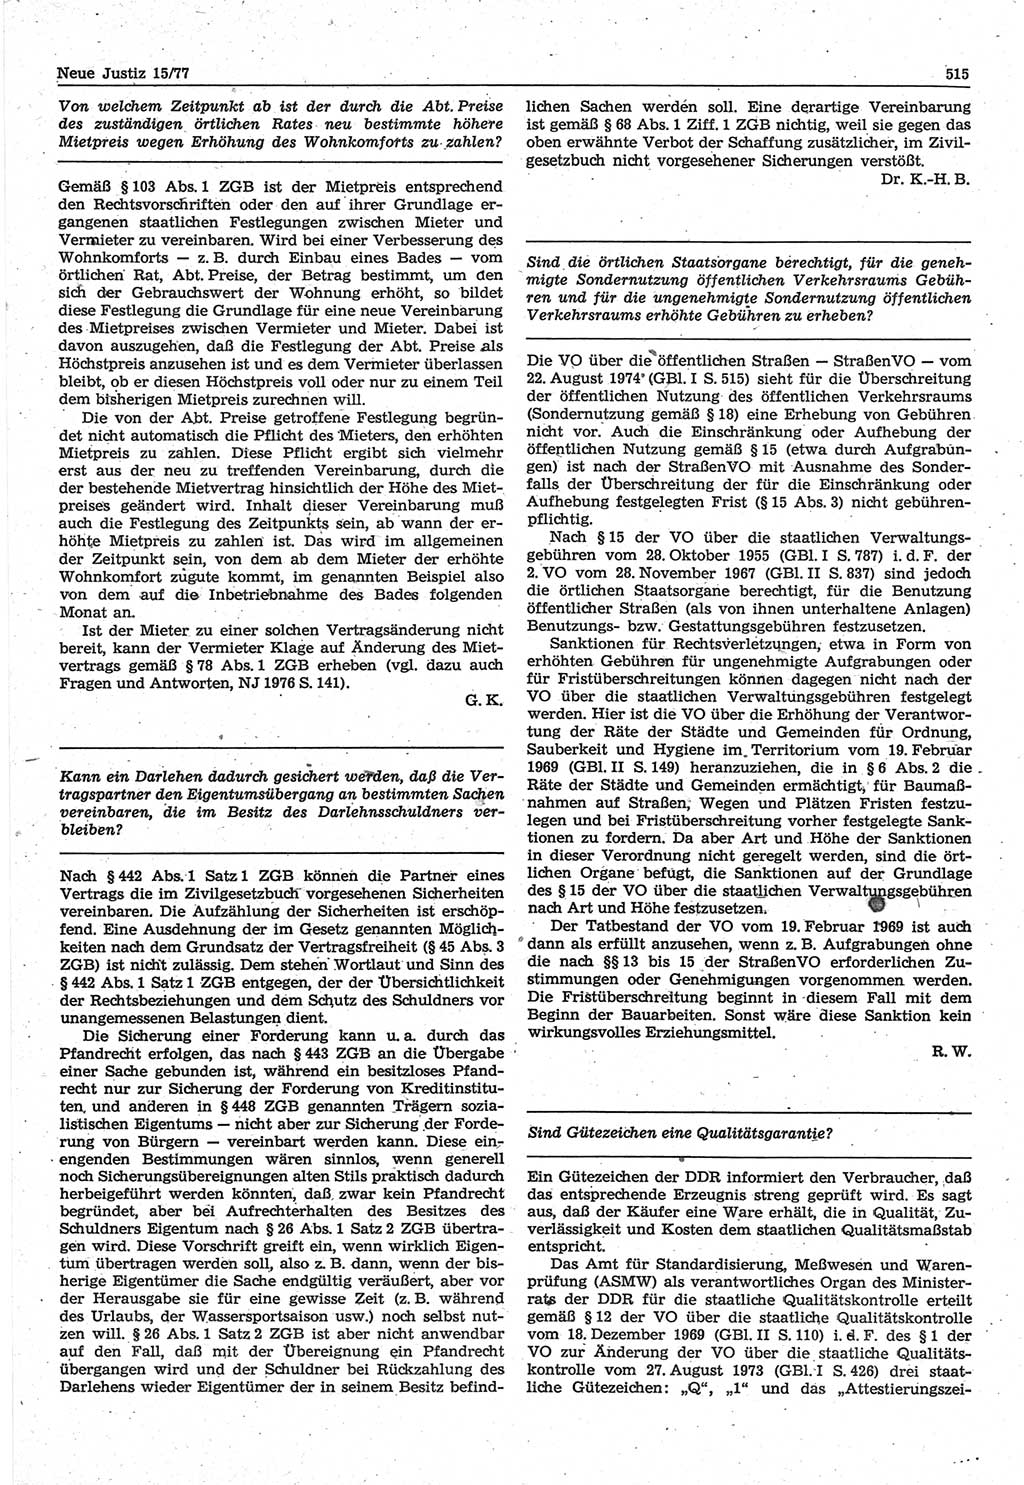 Neue Justiz (NJ), Zeitschrift für Recht und Rechtswissenschaft-Zeitschrift, sozialistisches Recht und Gesetzlichkeit, 31. Jahrgang 1977, Seite 515 (NJ DDR 1977, S. 515)